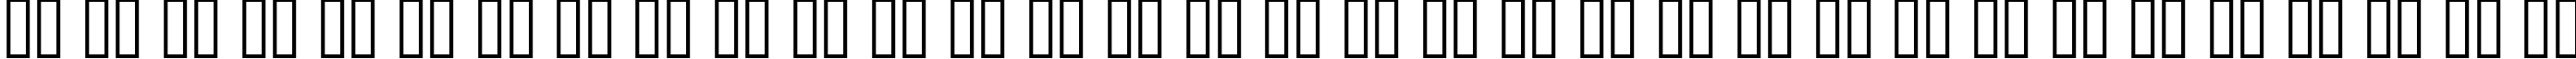 Пример написания русского алфавита шрифтом font400